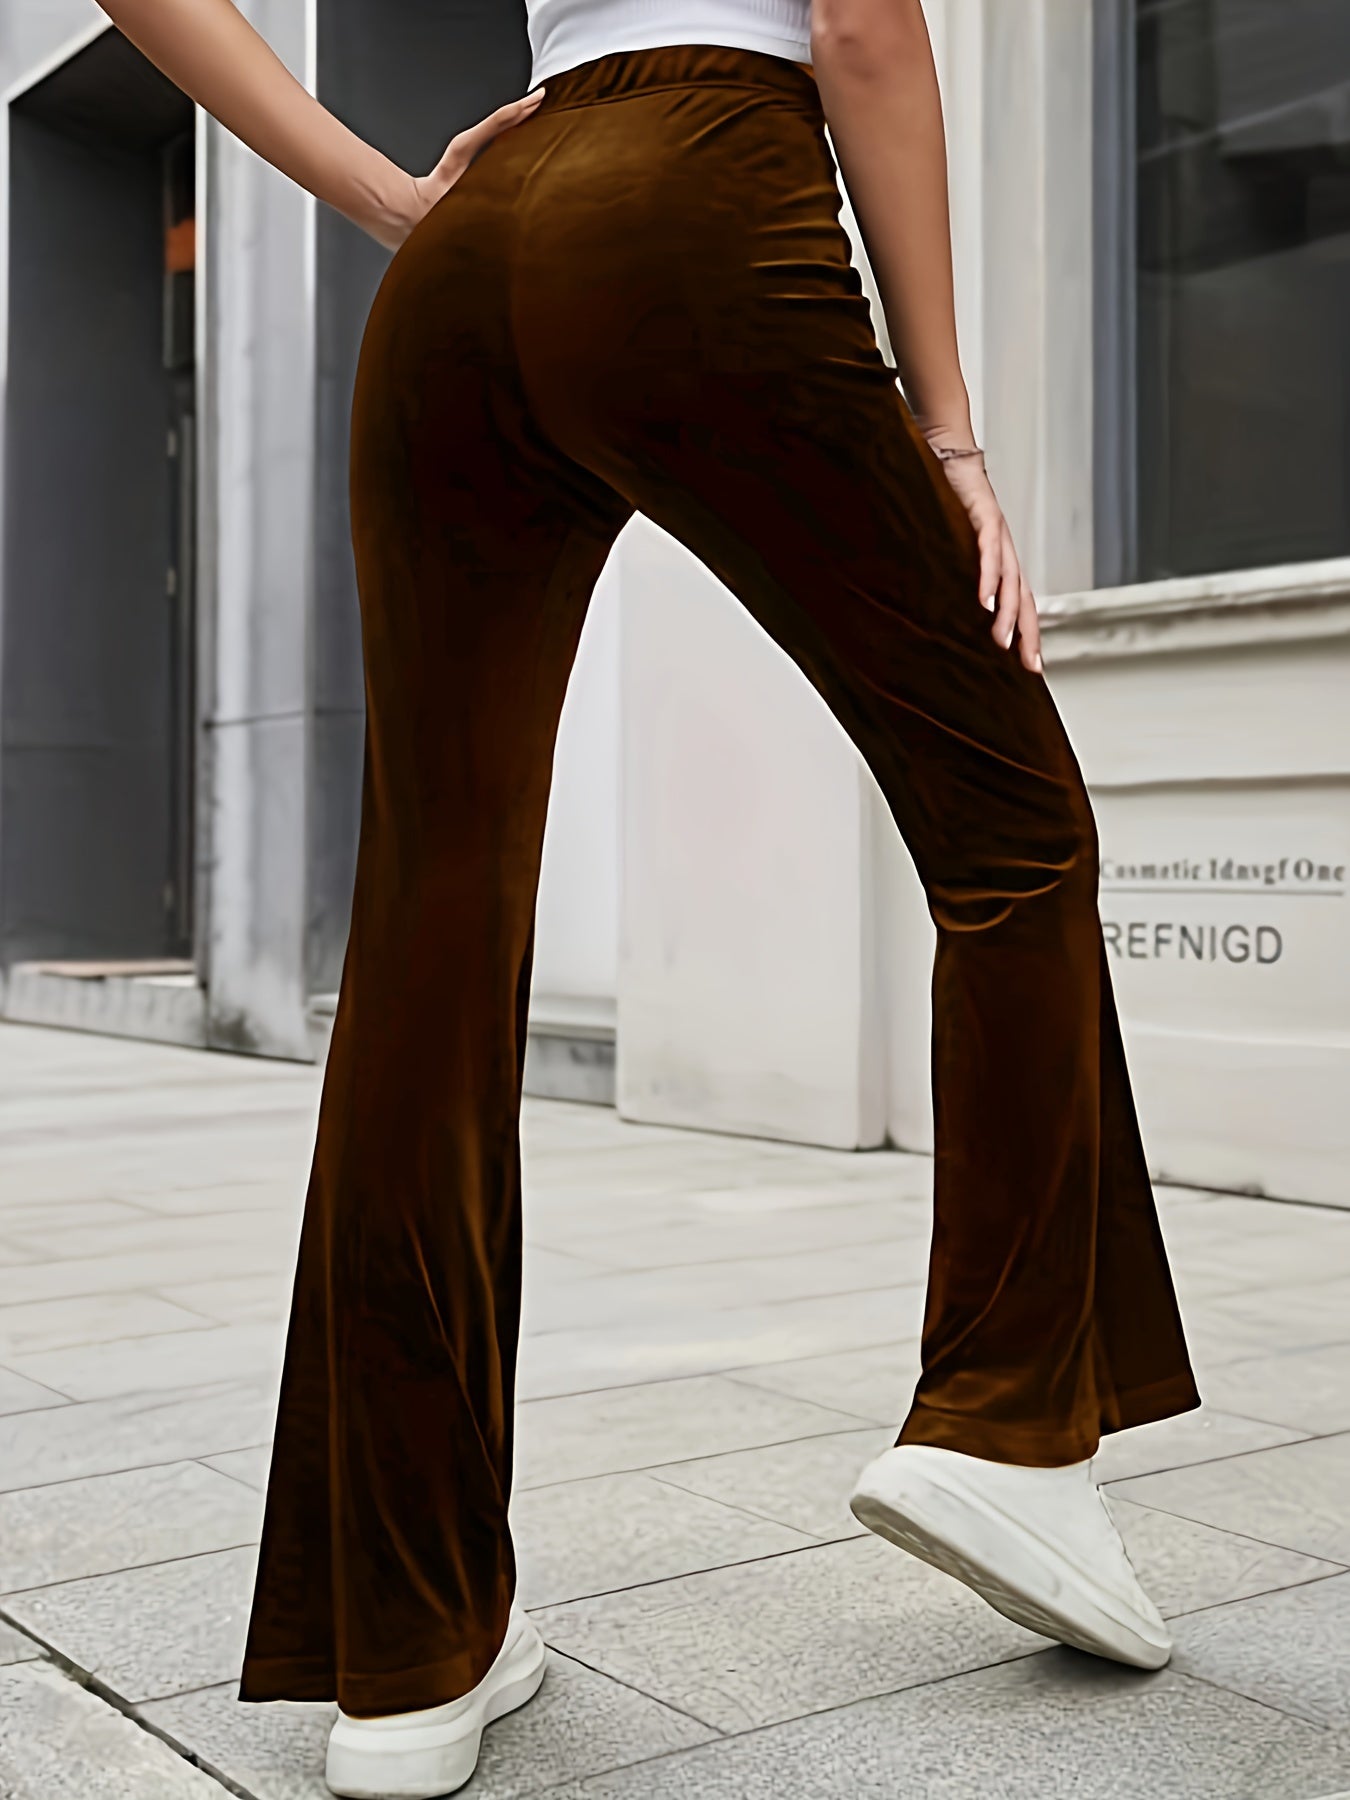 Vzyzv Solid Velvet Flare Leg Pants, Elegant High Waist Slim Pants, Women's Clothing